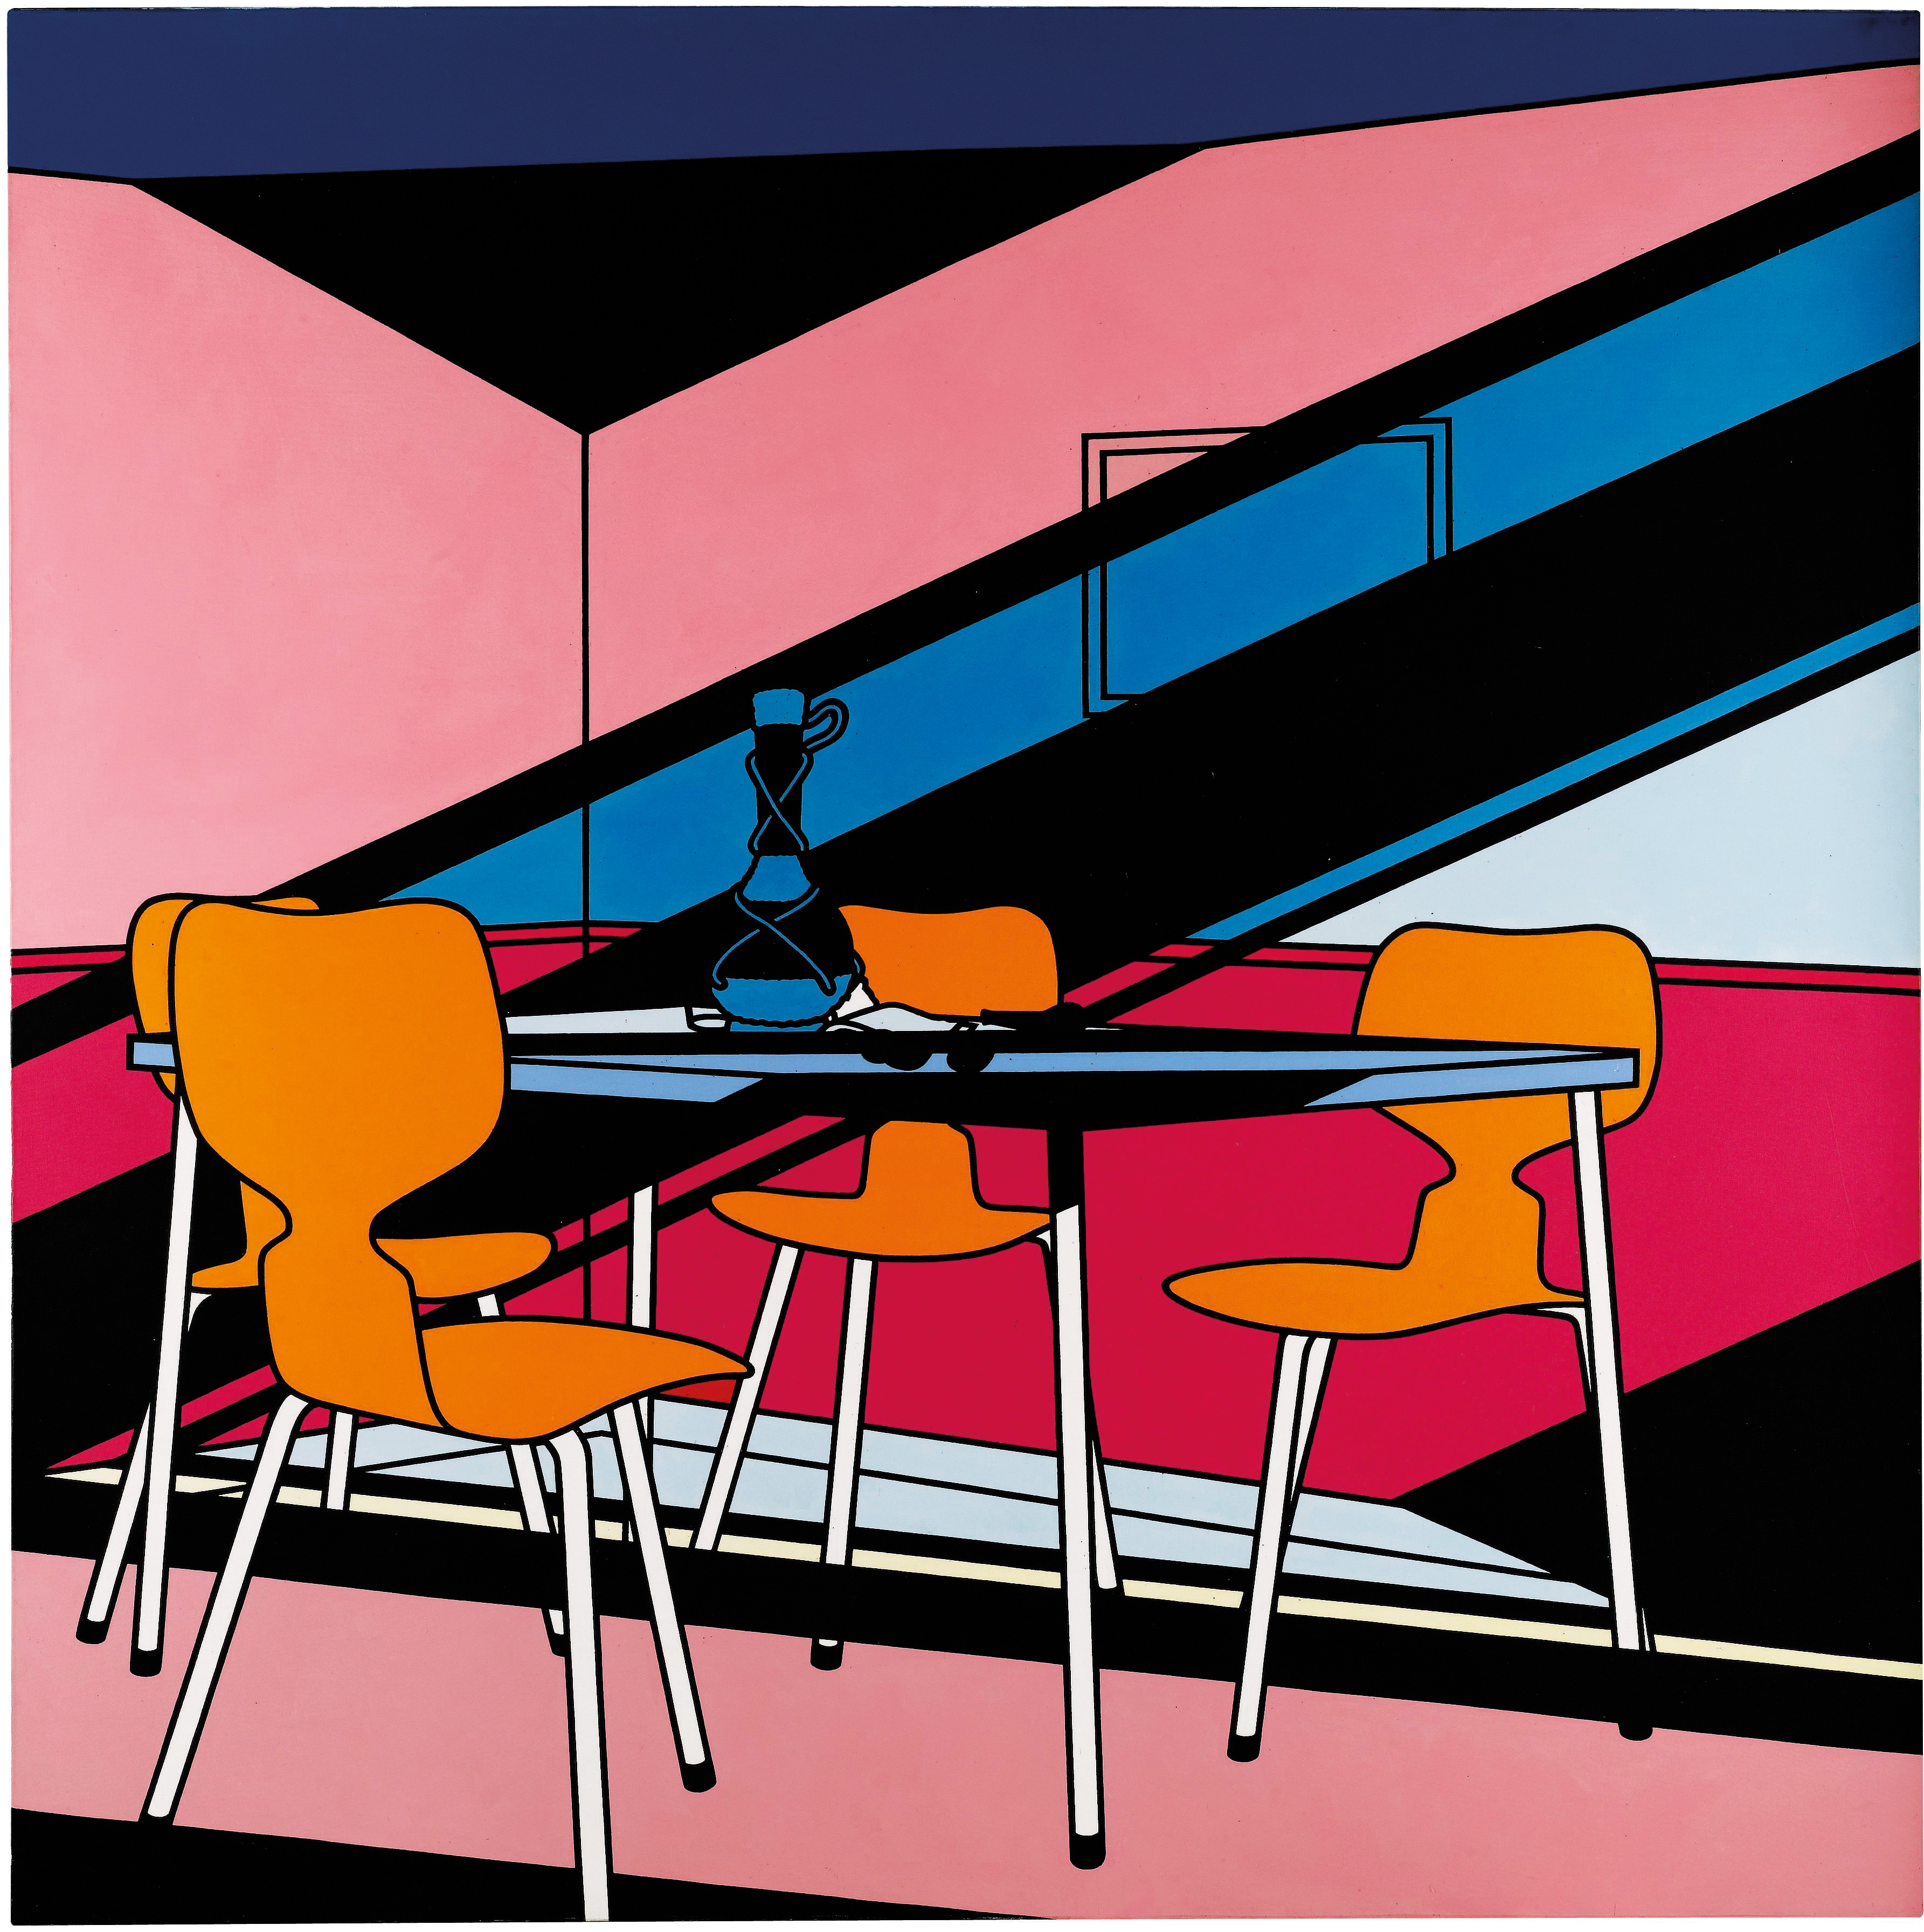 Cafe Interior: Afternoon, 1973. Colección privada. Fuente de imágenes: Tate Gallery